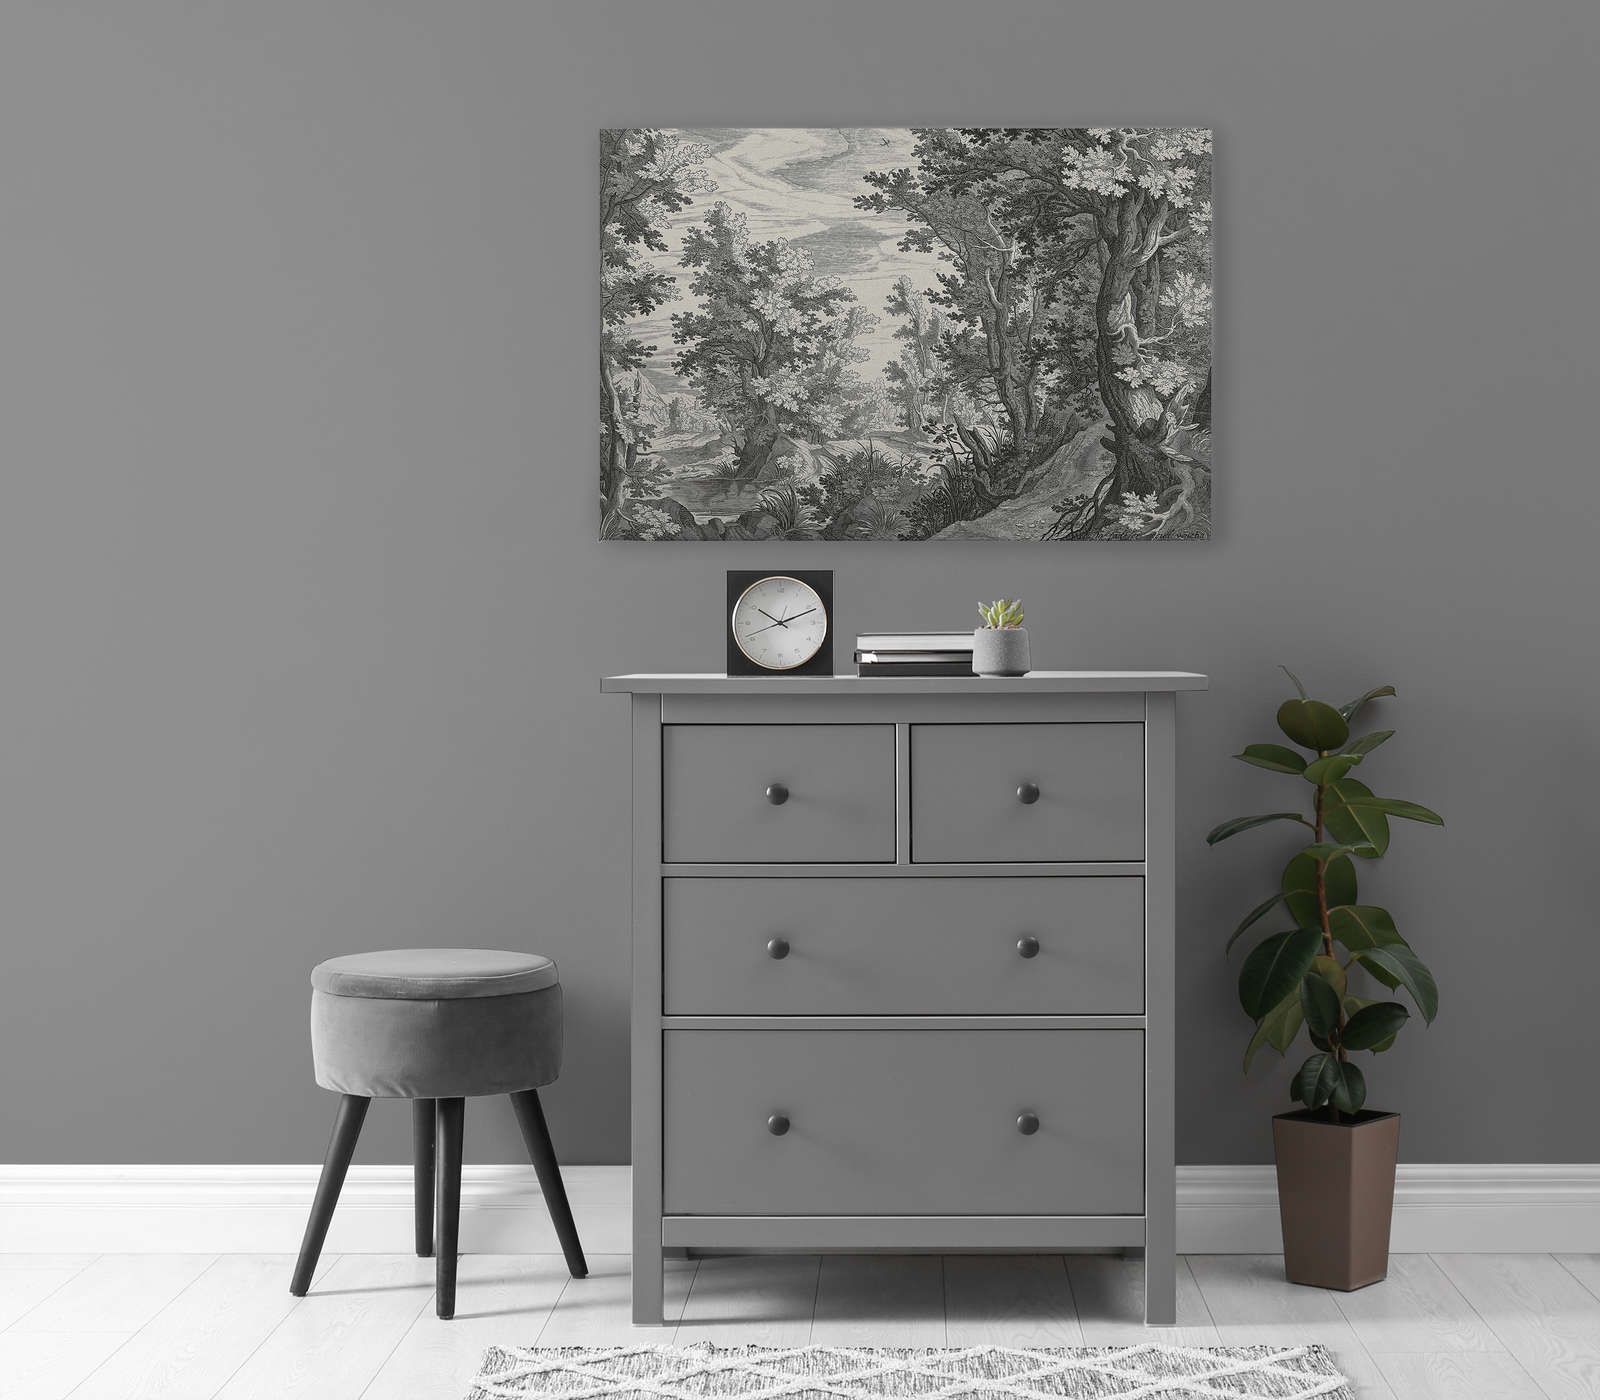             Fancy Forest 3 - Toile Paysage Gravure sur cuivre Noir et Blanc - 0,90 m x 0,60 m
        